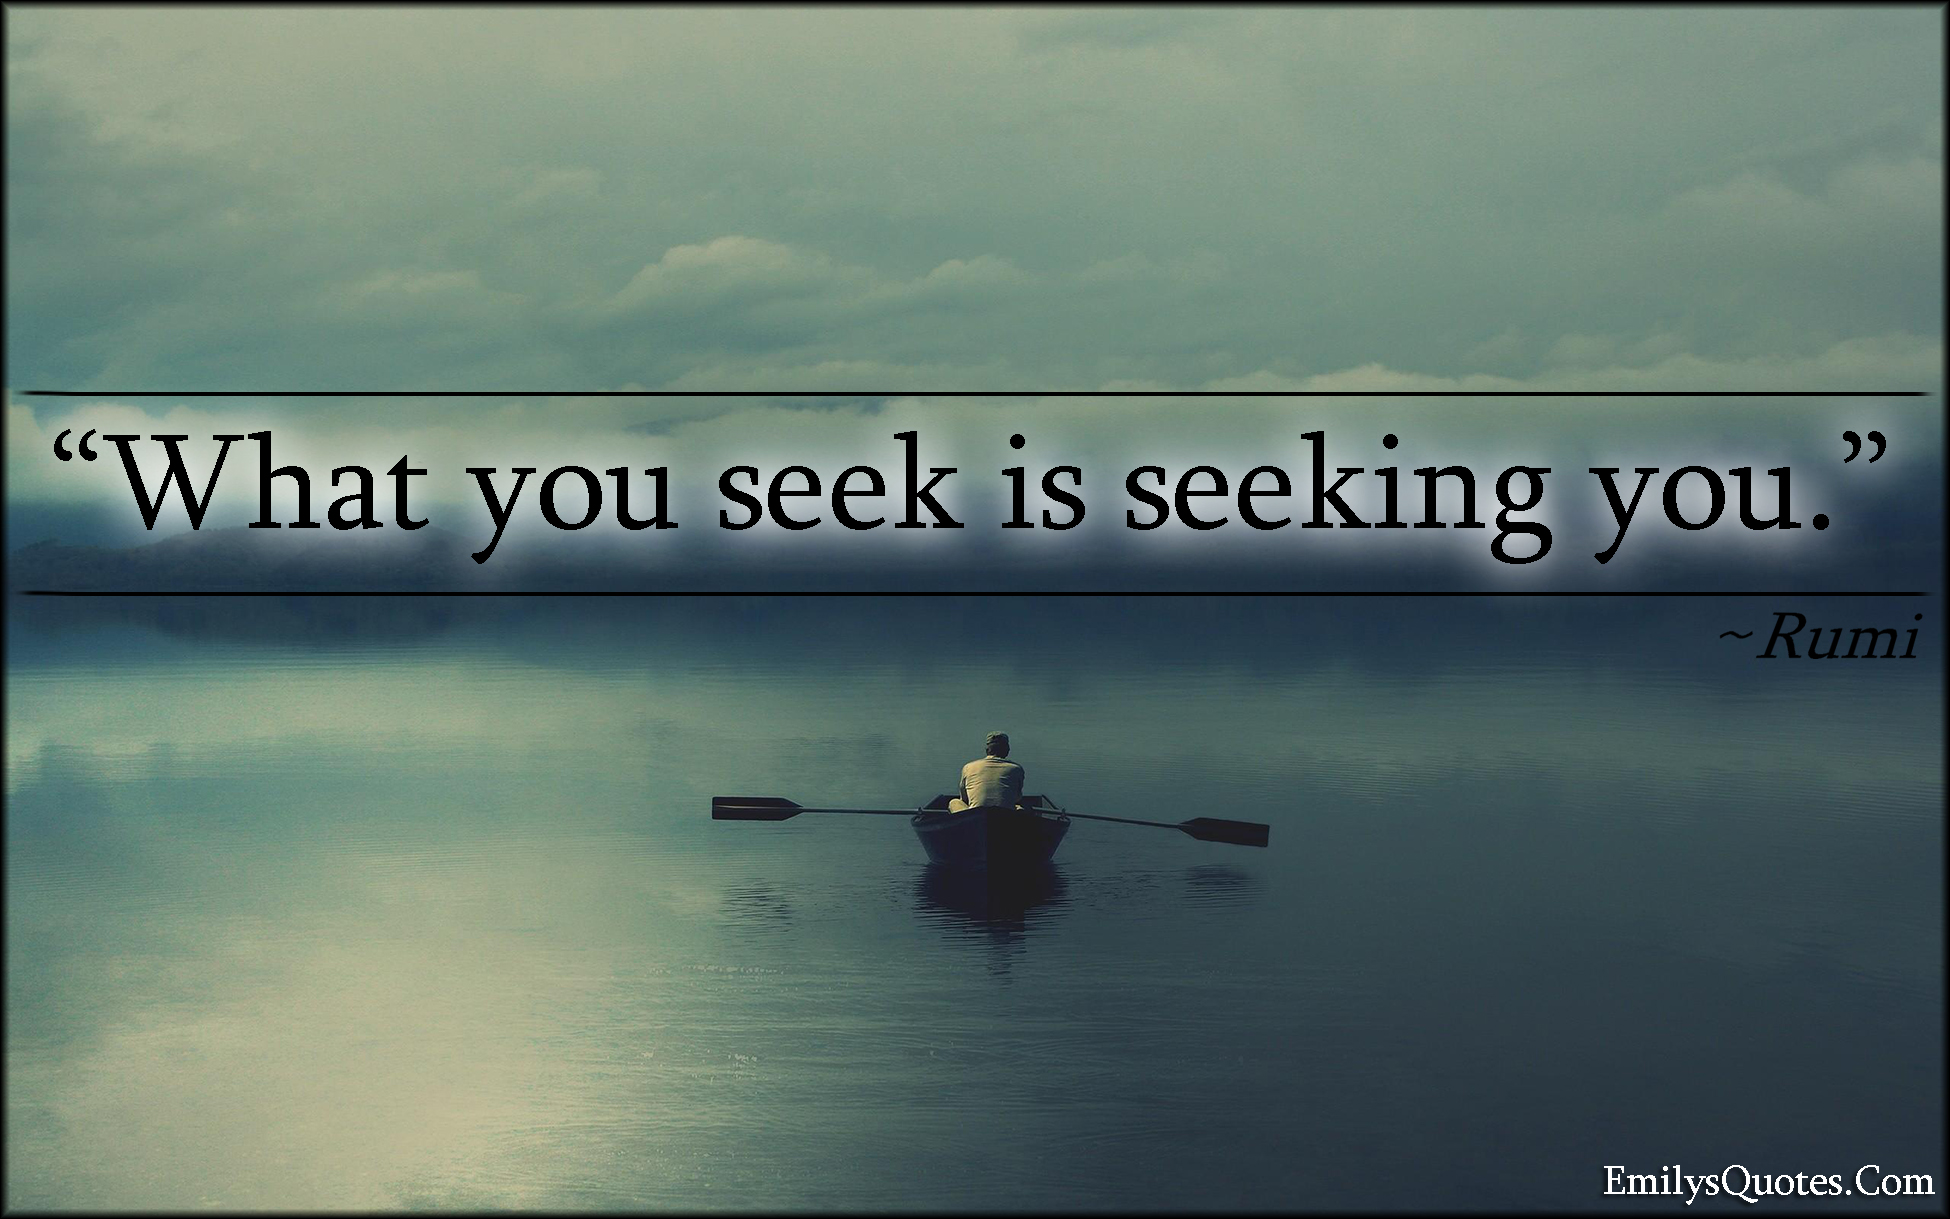 What you seek is seeking you